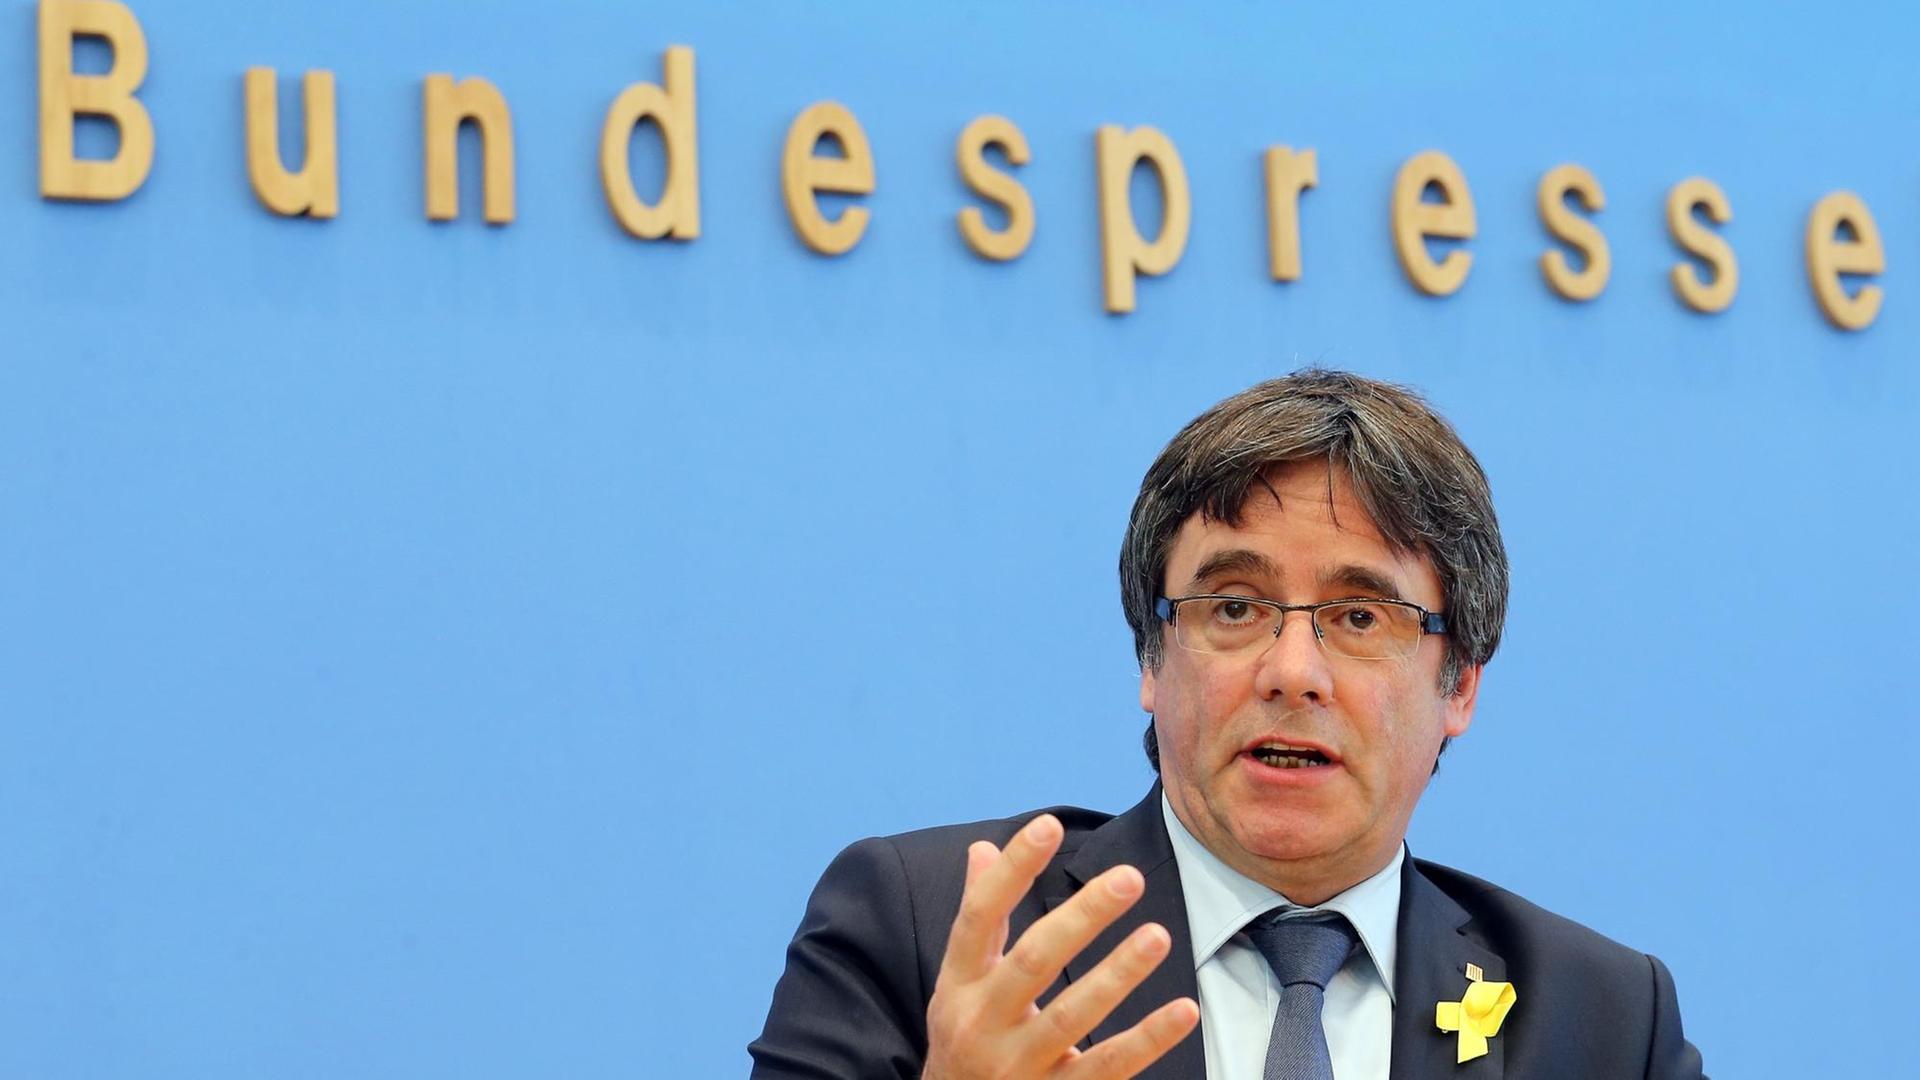 Carles Puigdemont bei einer Presse-Konferenz